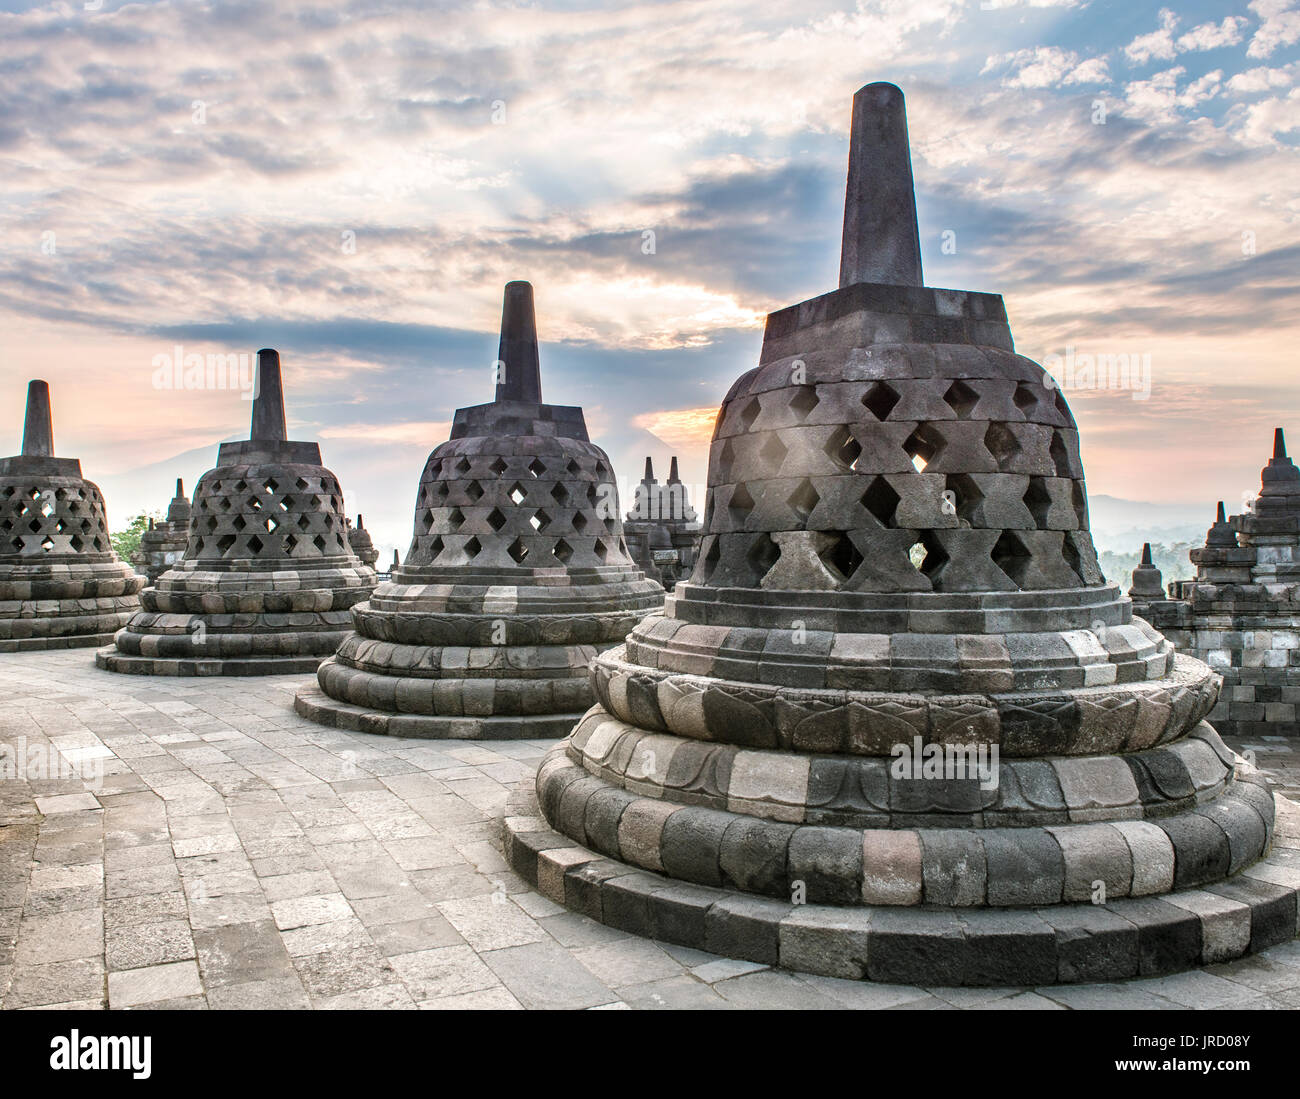 Complexe du temple Borobudur au lever du soleil, stupas, ciel nuageux, Borobudur, Yogyakarta, Java, Indonésie Banque D'Images